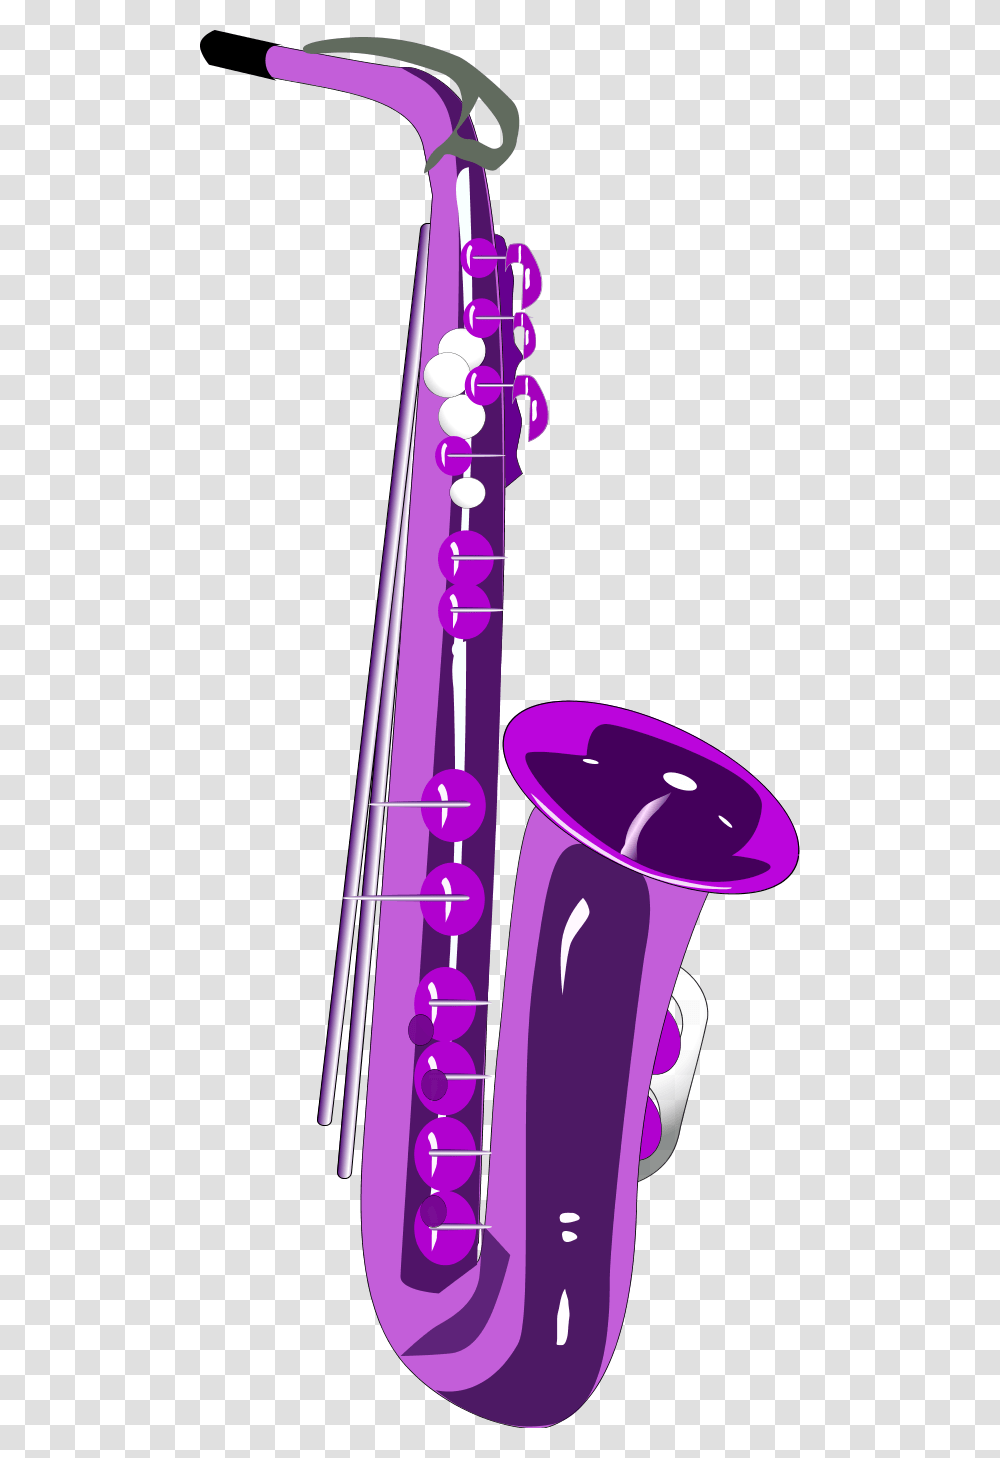 Tenor Saxophone Clipart Clip Art Cartoon Tenor Sax, Musical Instrument, Trumpet, Horn, Brass Section Transparent Png